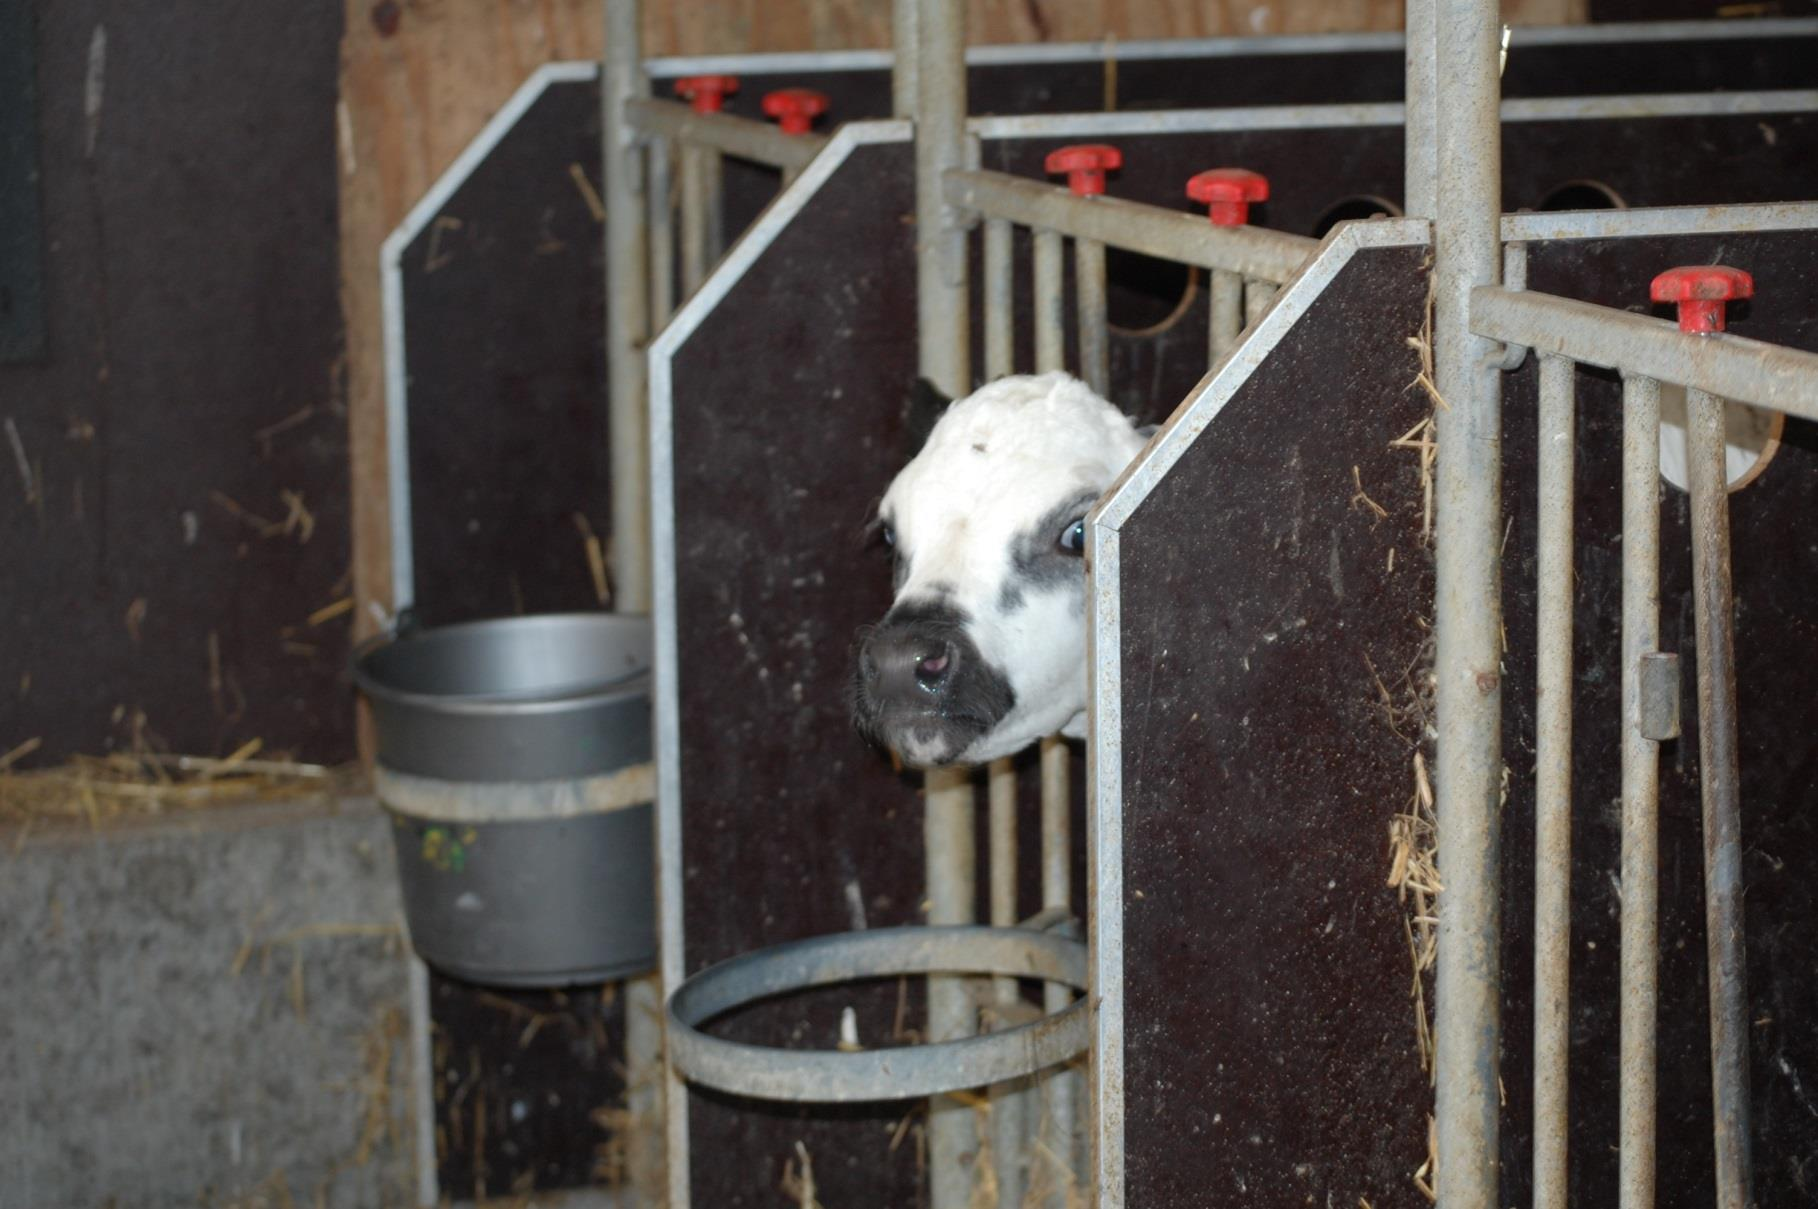 Inleiding De Nederlandse melkveehouderij heeft een goed imago in vergelijking met andere veehouderijsystemen.